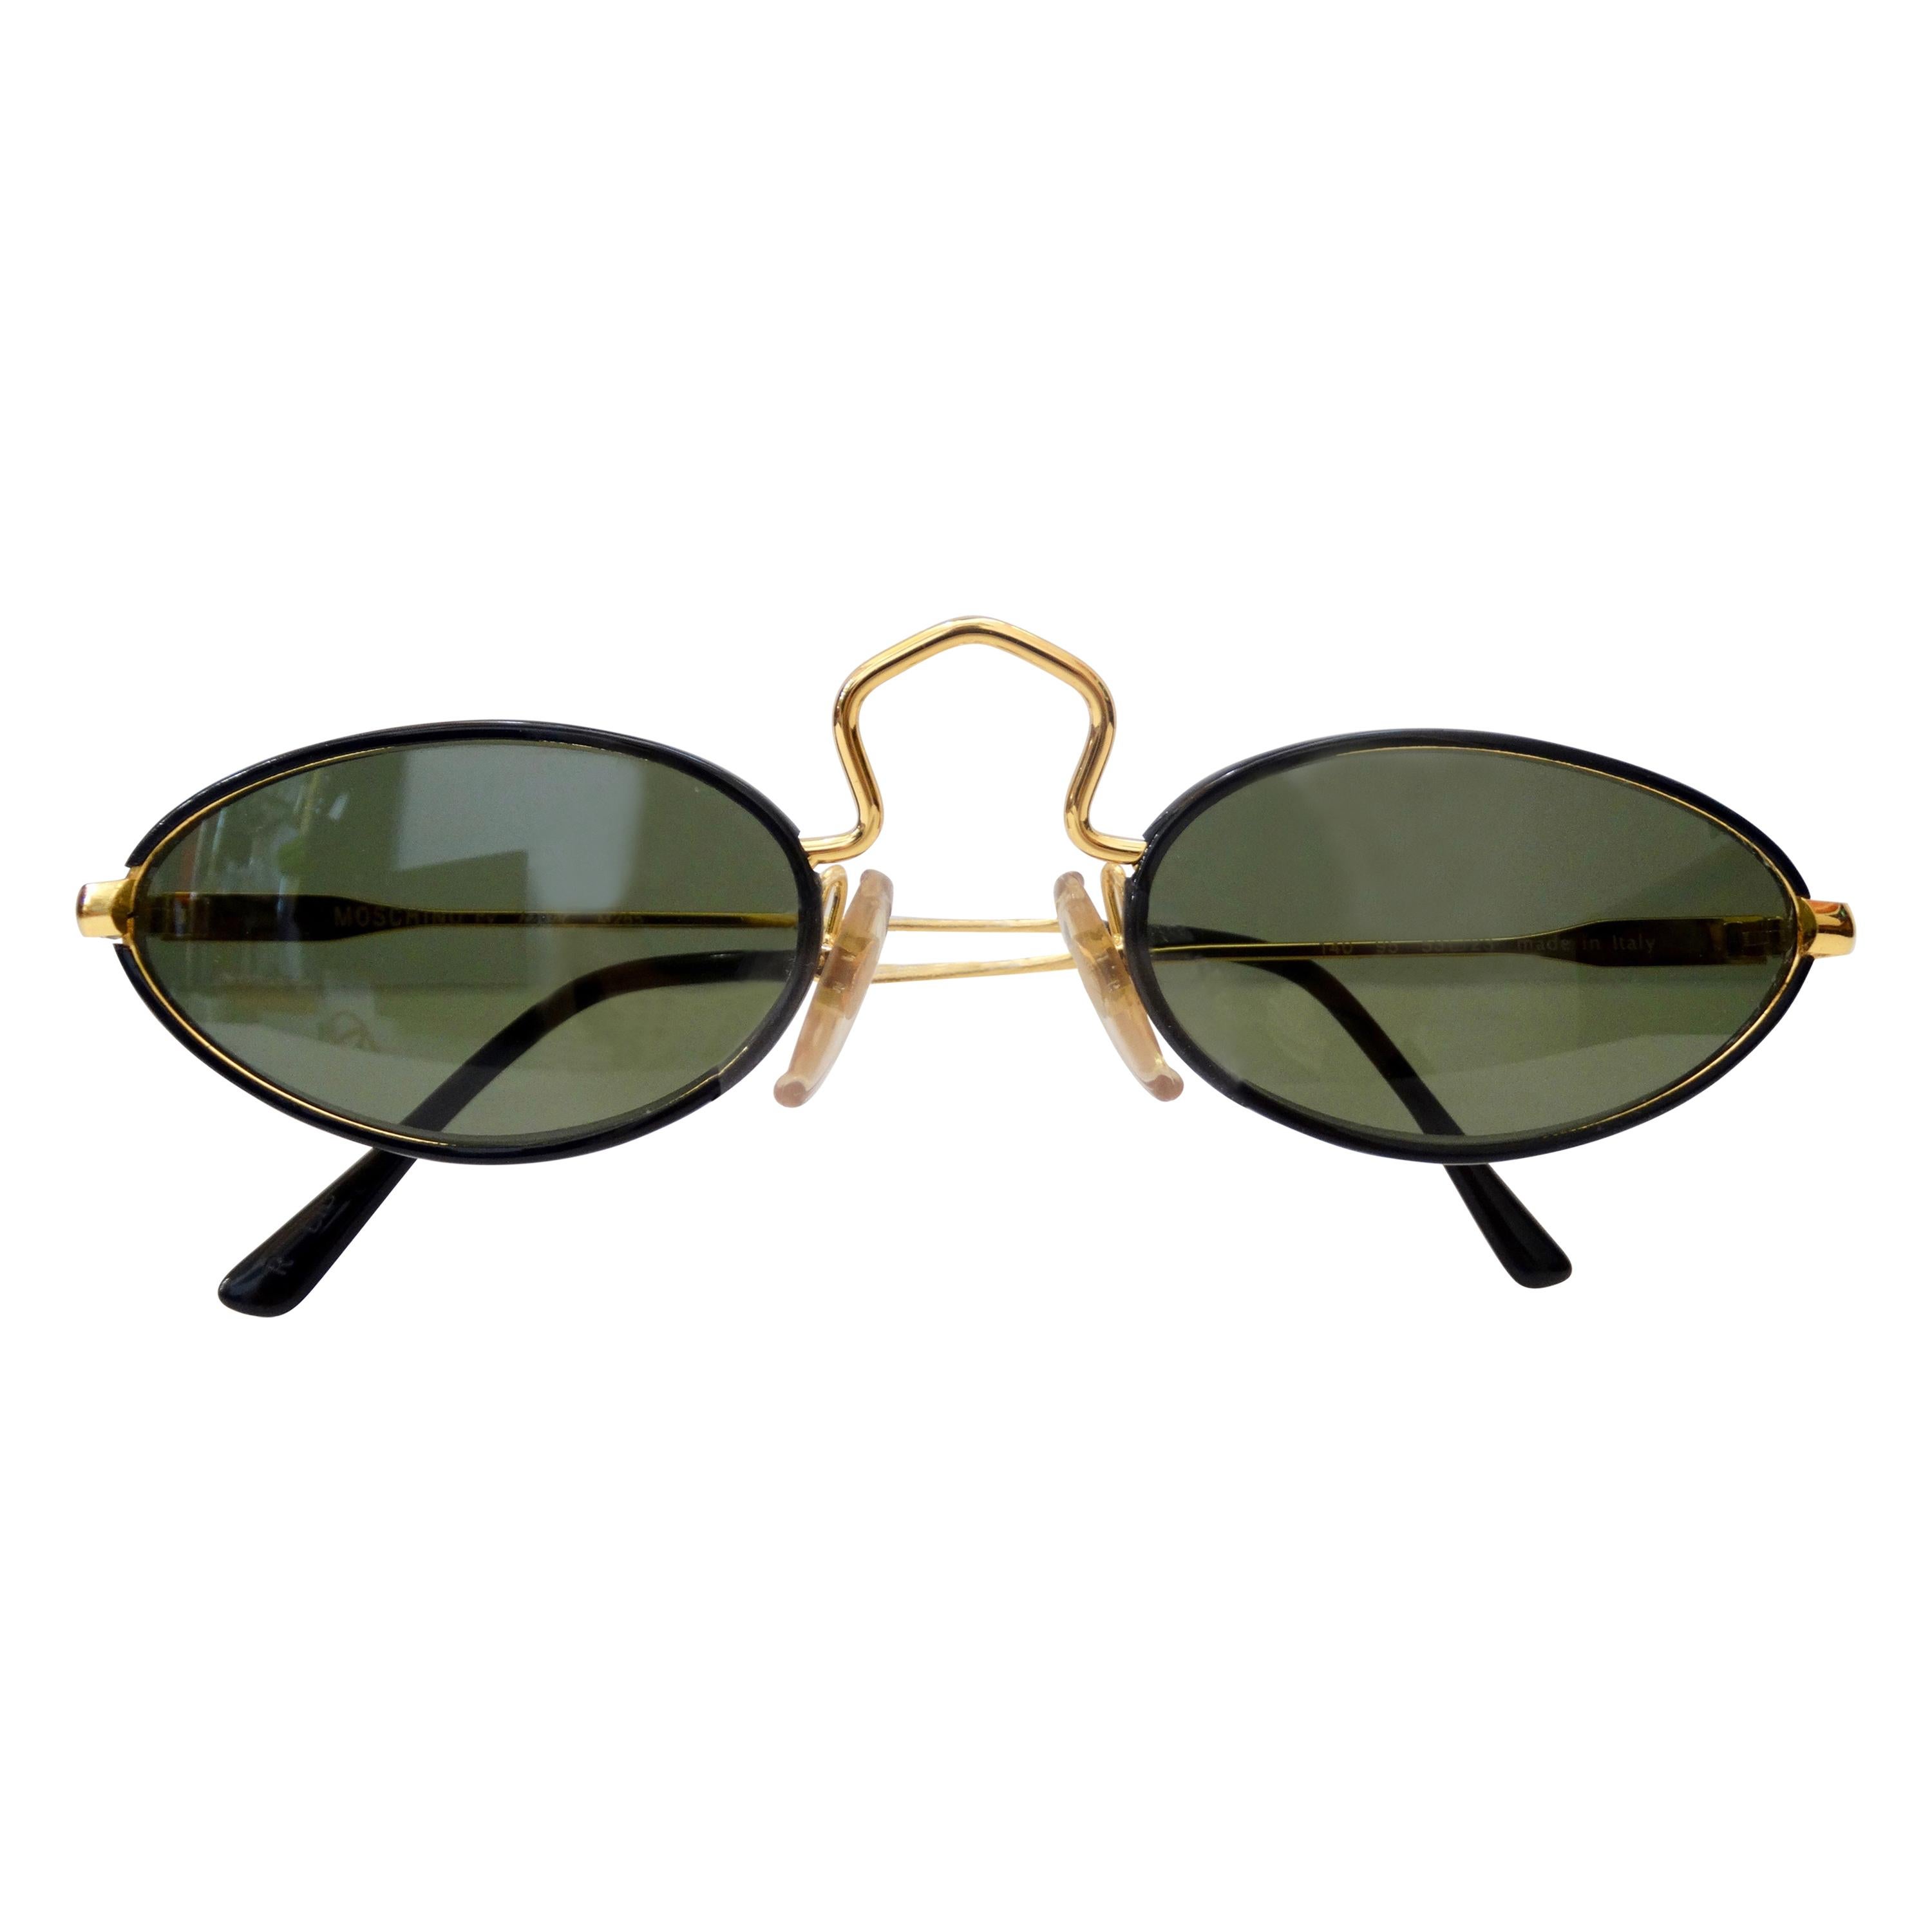 Moschino 1990s Persol Small Oval Sunglasses